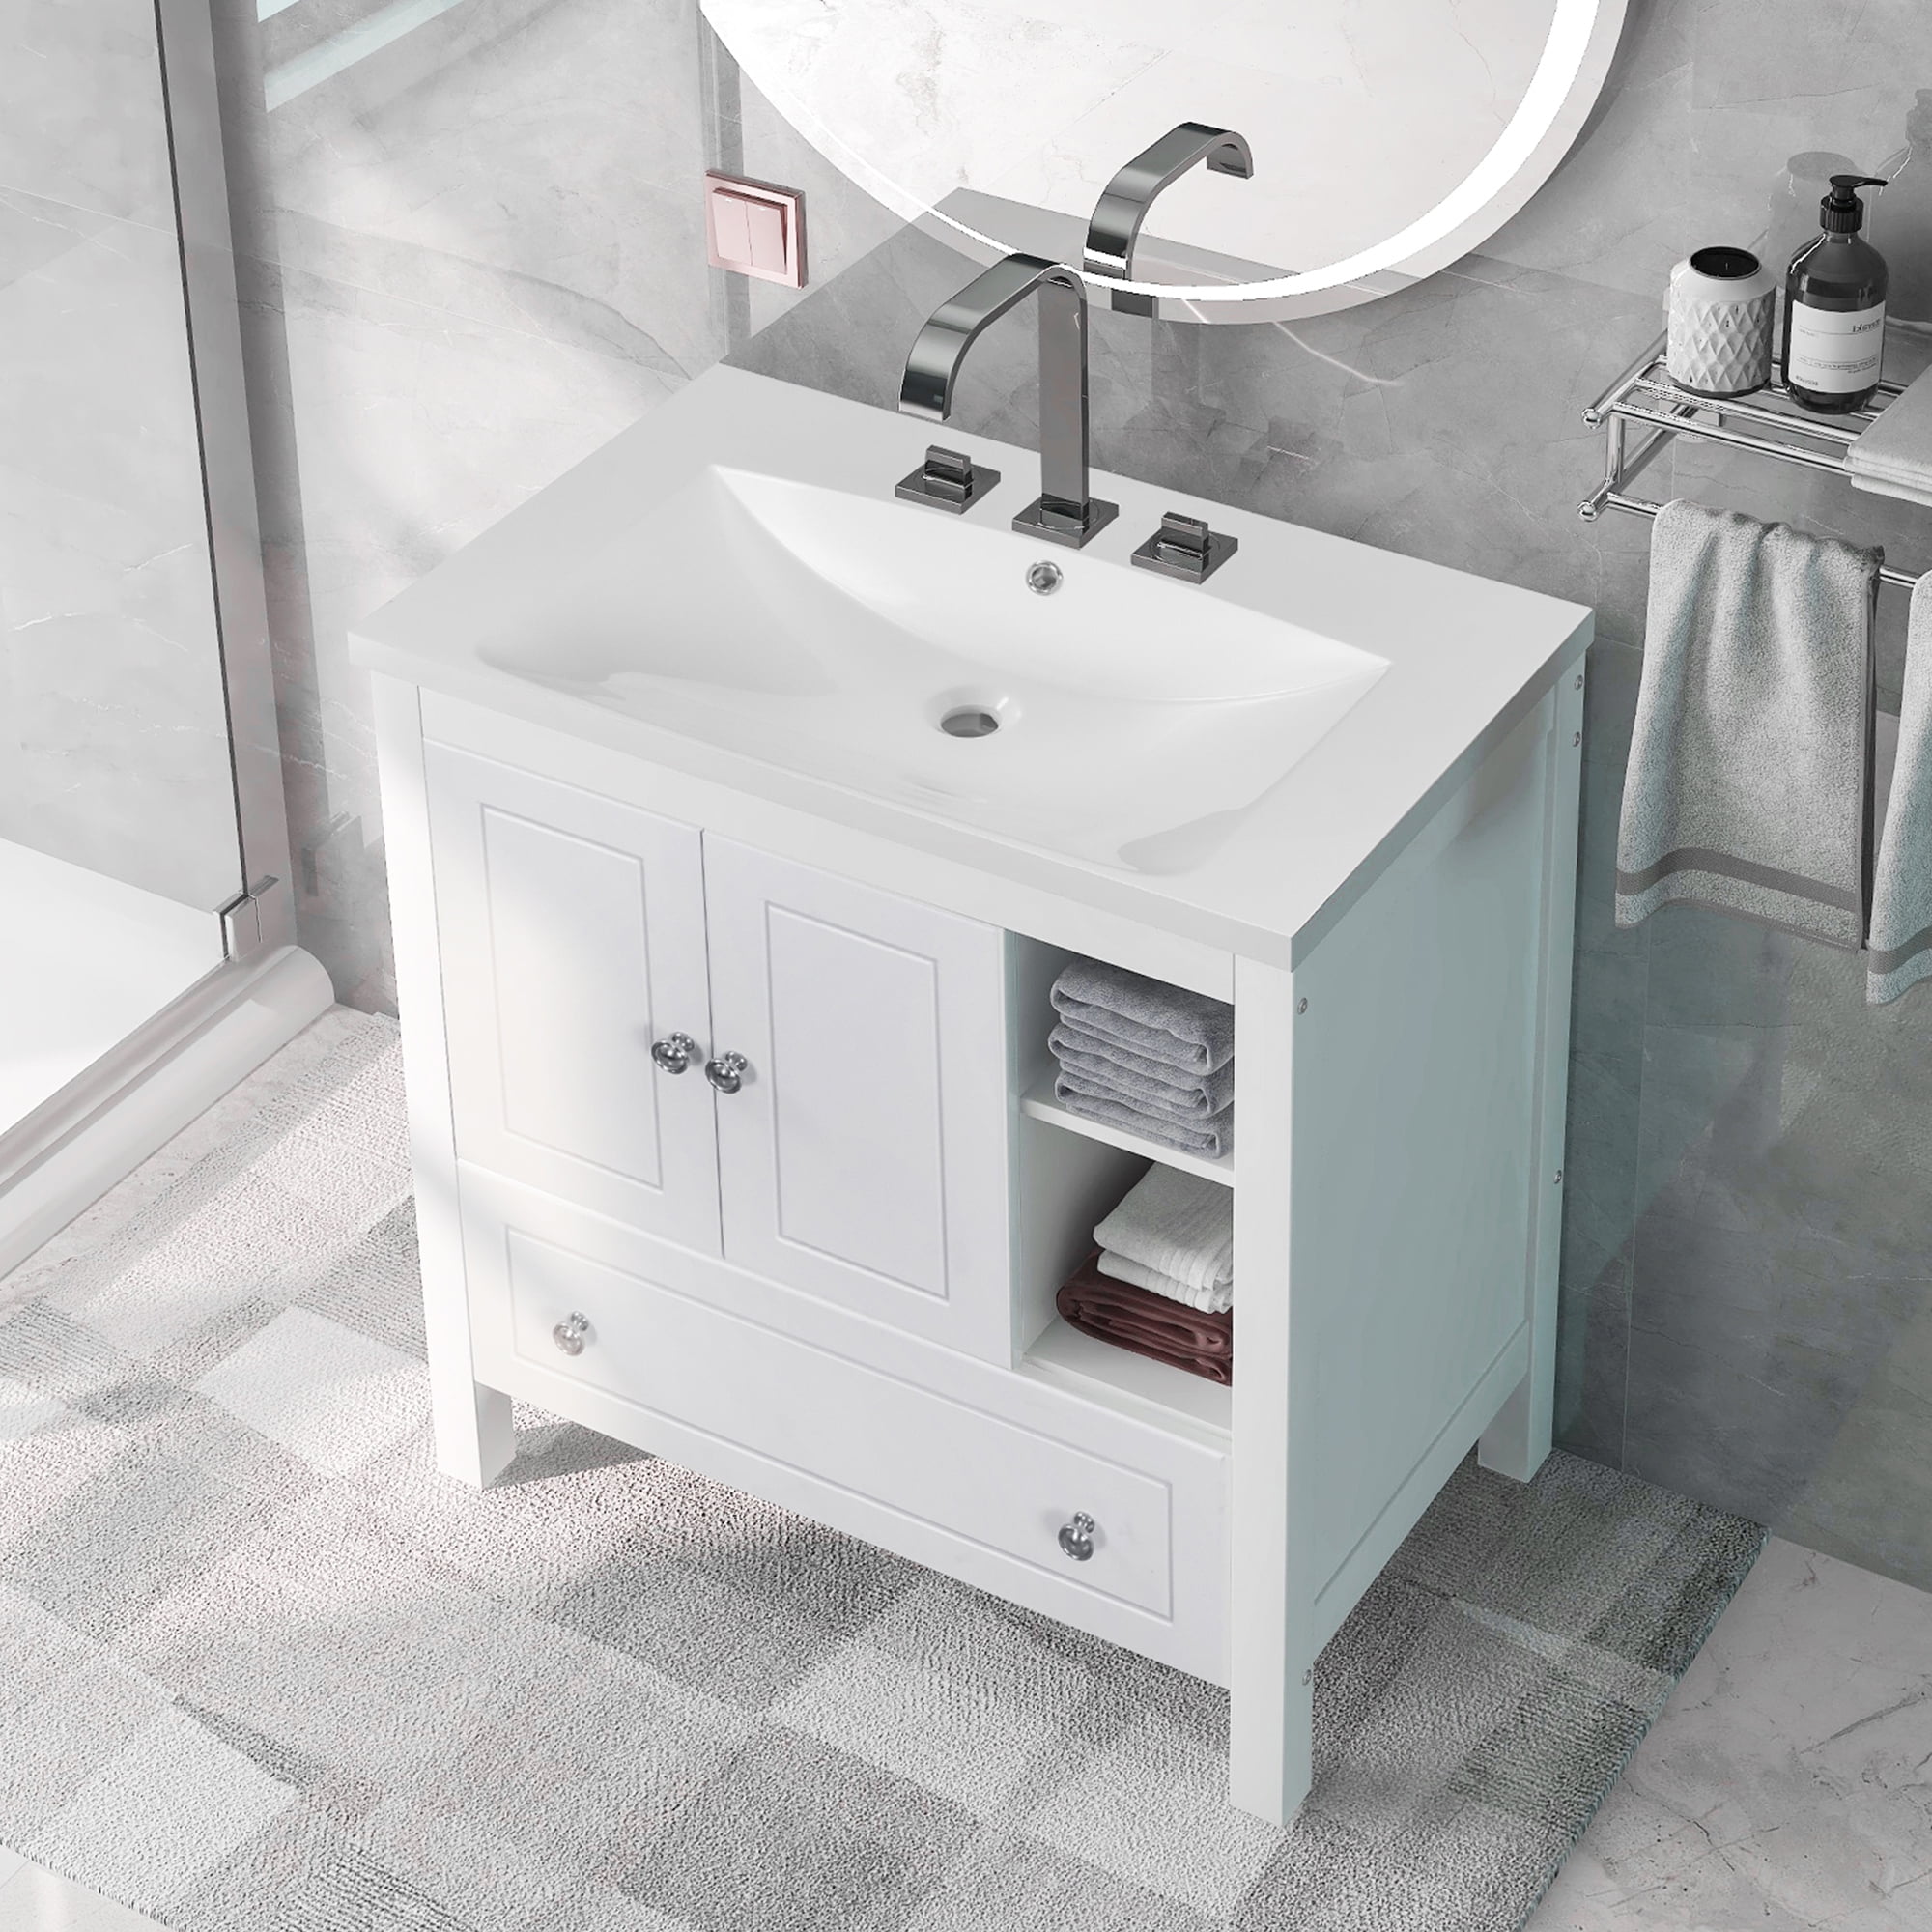 Merax 30'' Bathroom Vanity with Ceramic Basin Sink, Modern